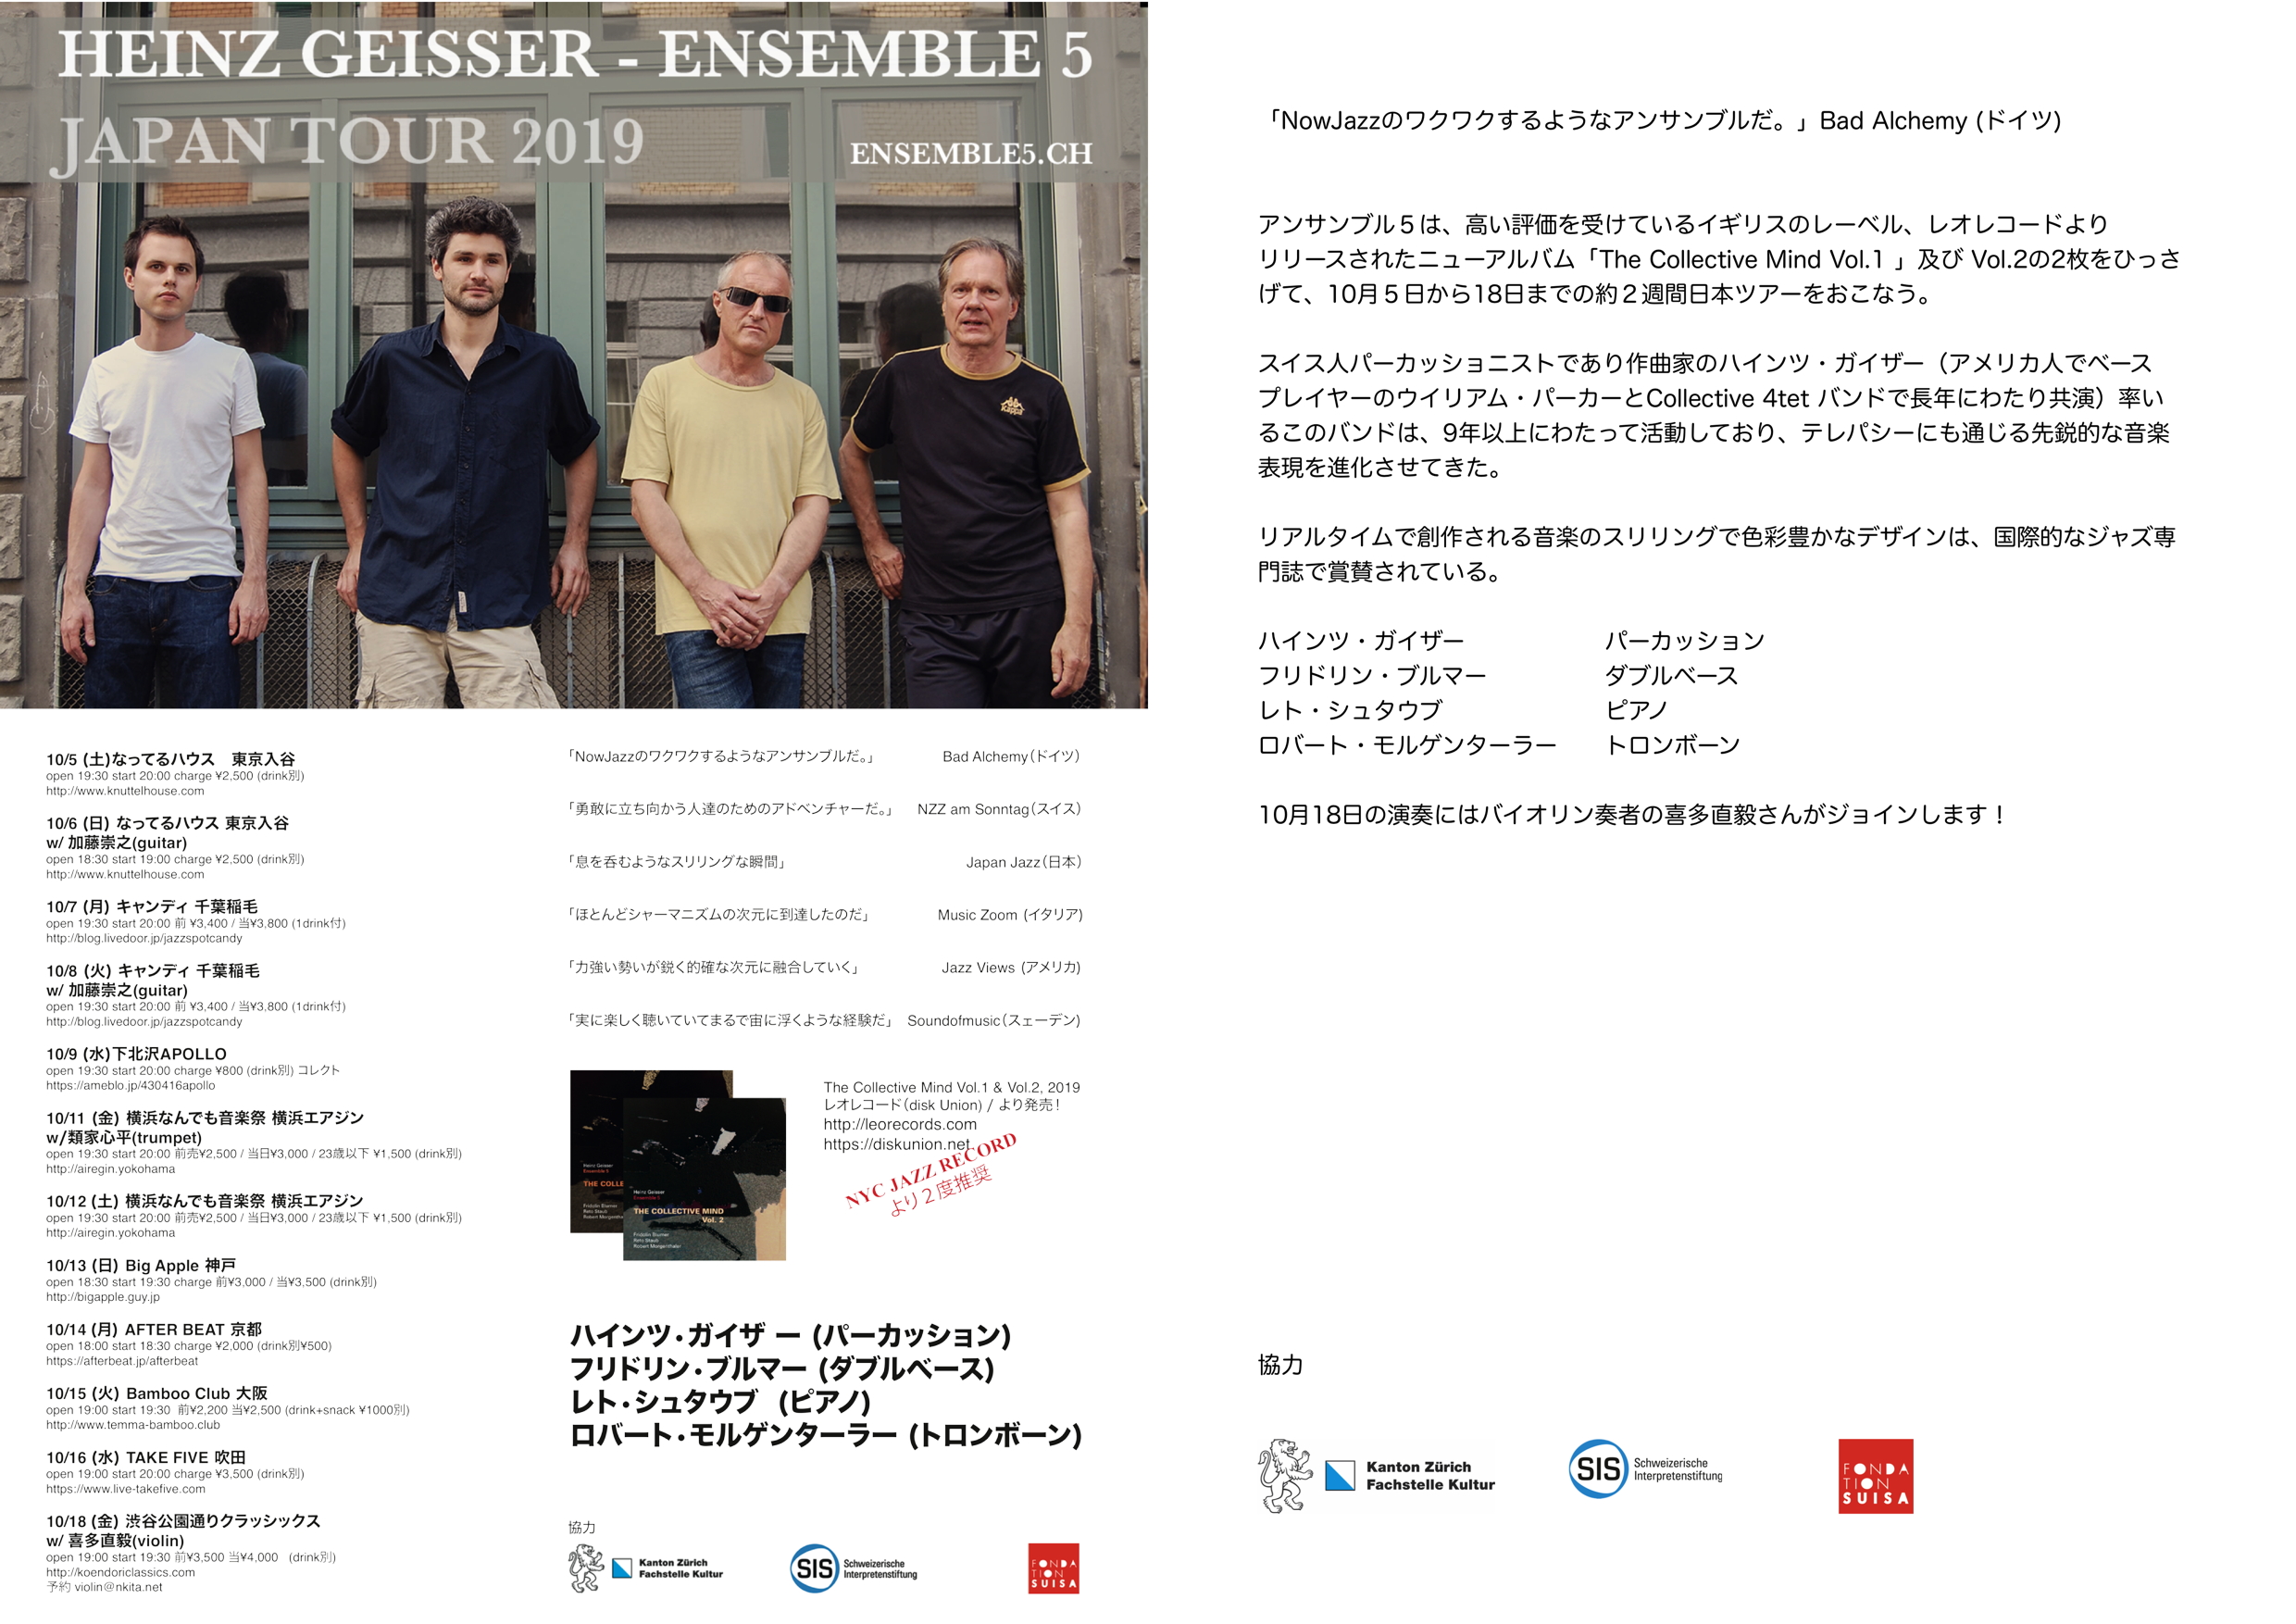 Heinz Geisser Ensemble 5